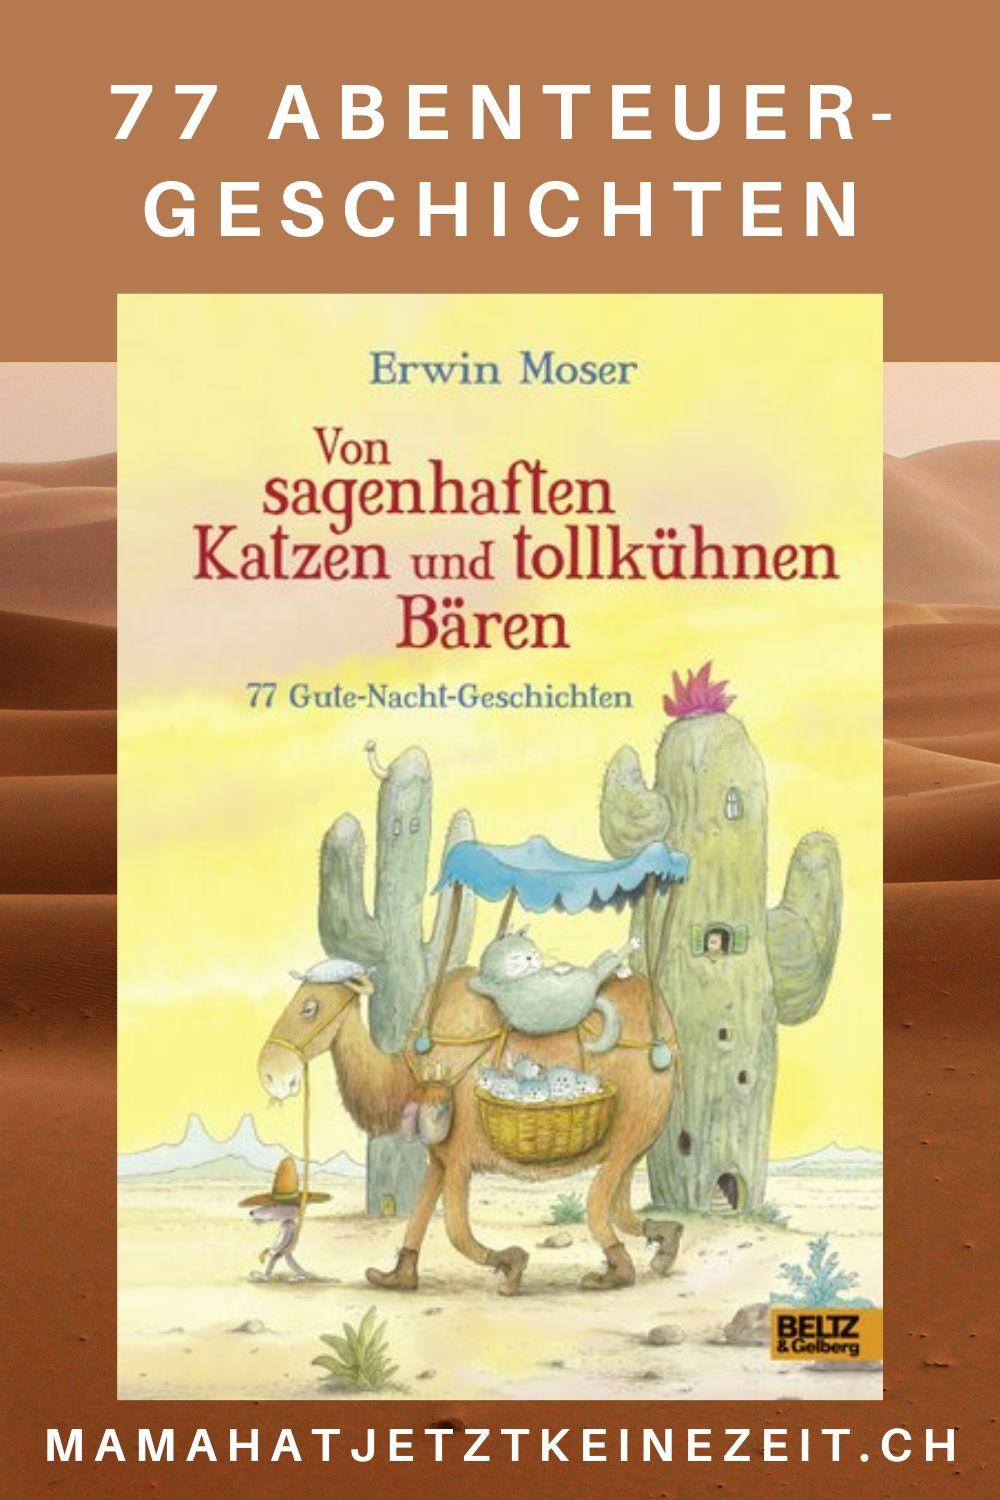 Erwin Moser: „Von sagenhaften Katzen und tollkühnen Bären“